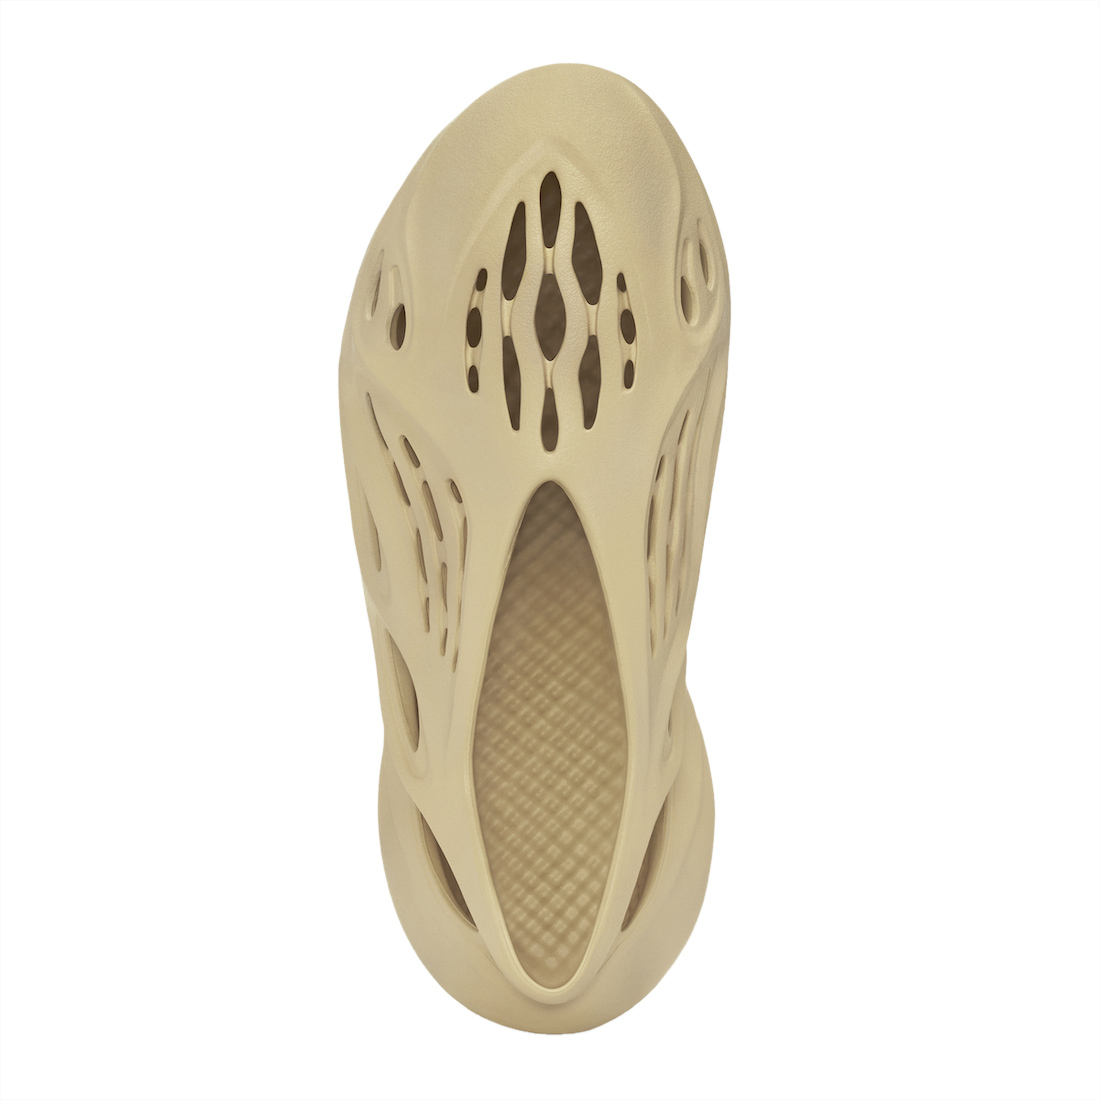 adidas Yeezy Foam Runner Desert Sand